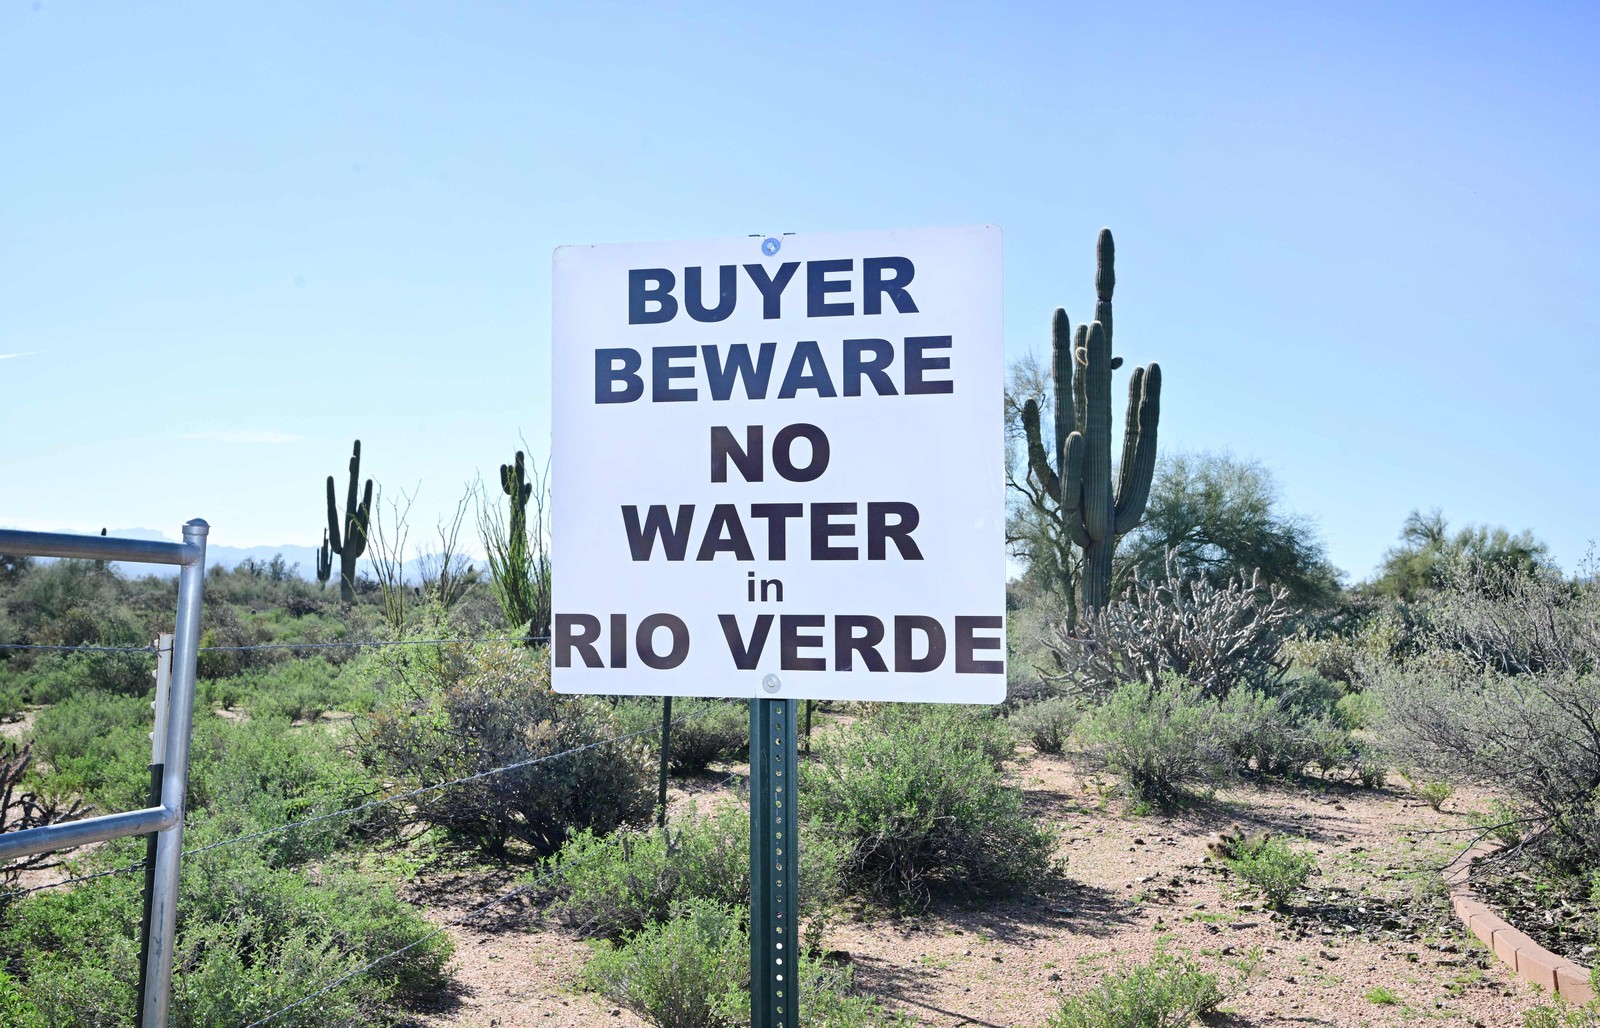 "Cuidado comprador, não há água no Rio Verde", diz a placa no Arizona. Sudoeste dos EUA sofre com racionamento devido à longa seca — Foto: FREDERIC J. BROWN/AFP